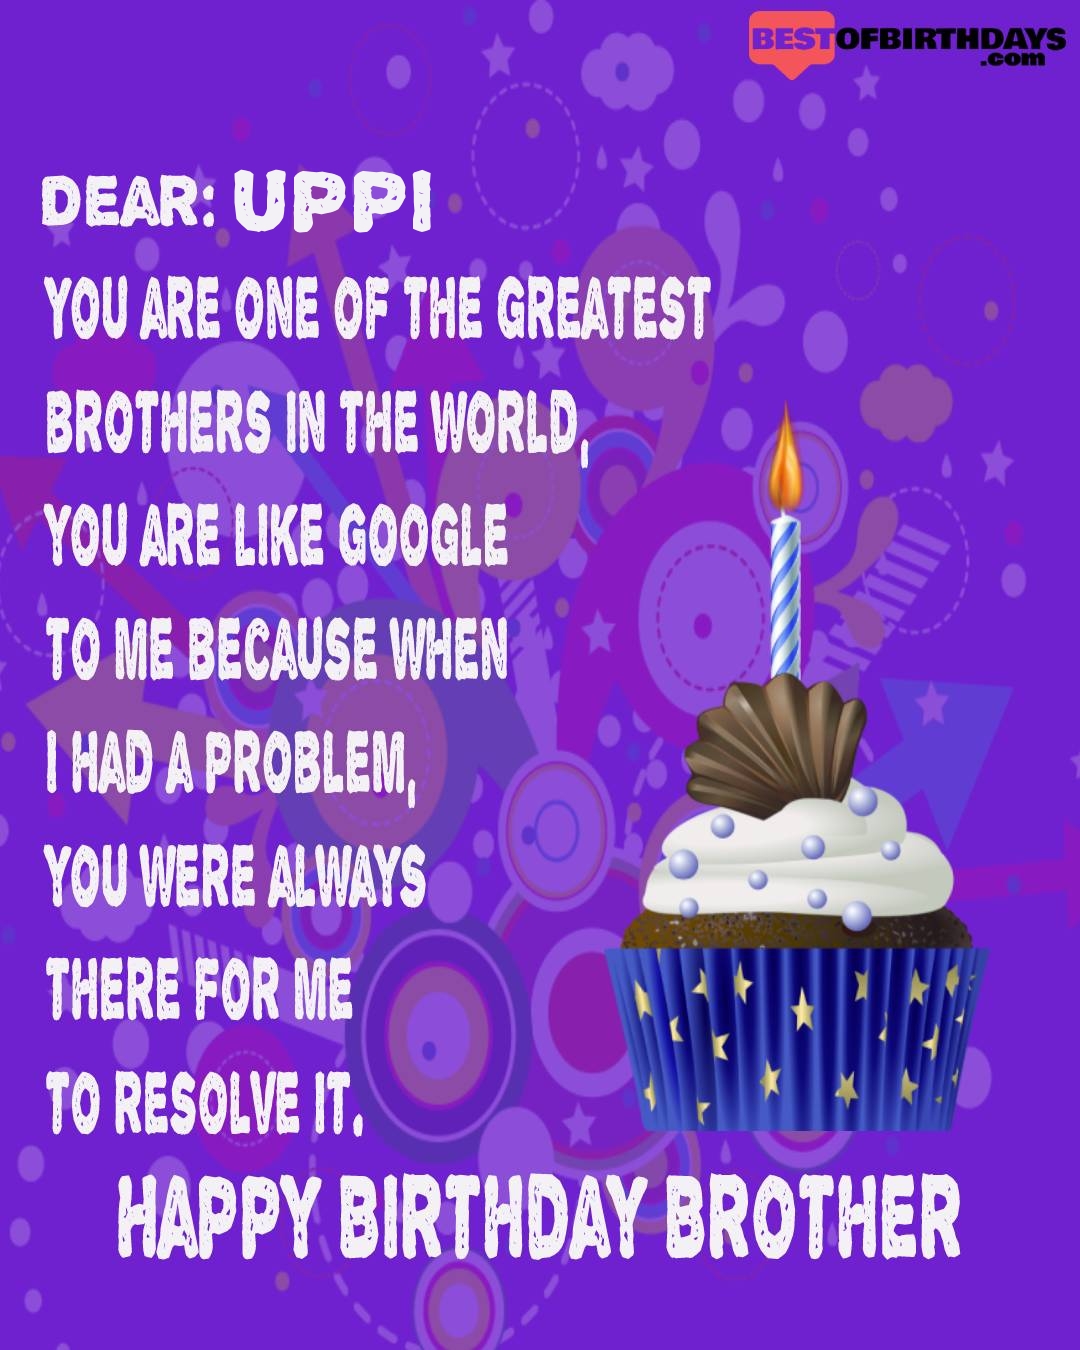 Happy birthday uppi bhai brother bro